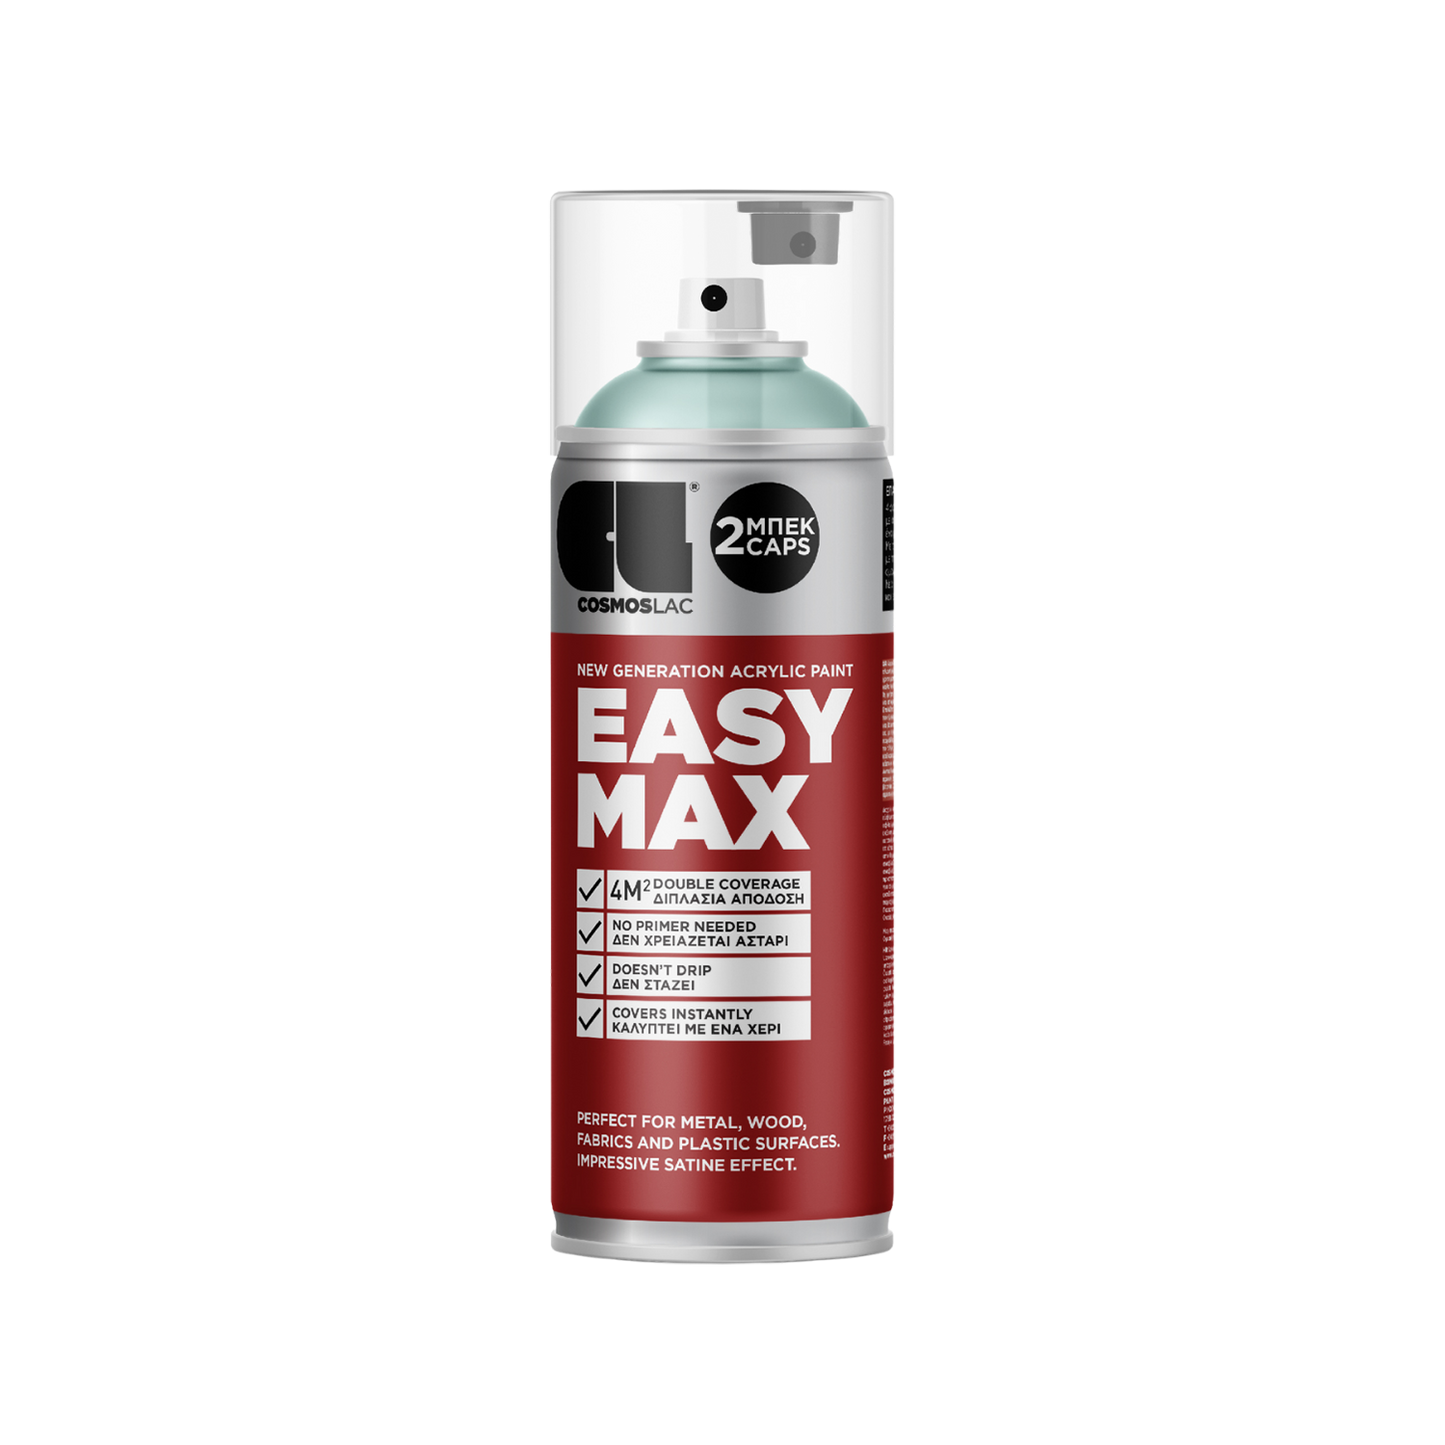 COSMOS LAC EASY MAX Premium Acryllack Sprühlack zum Upcycling und DIY Projekten von Möbeln und Dekoobjekten rot silberne Sprühflasche Inhalt ist pastell-grüne Acrylfarbe